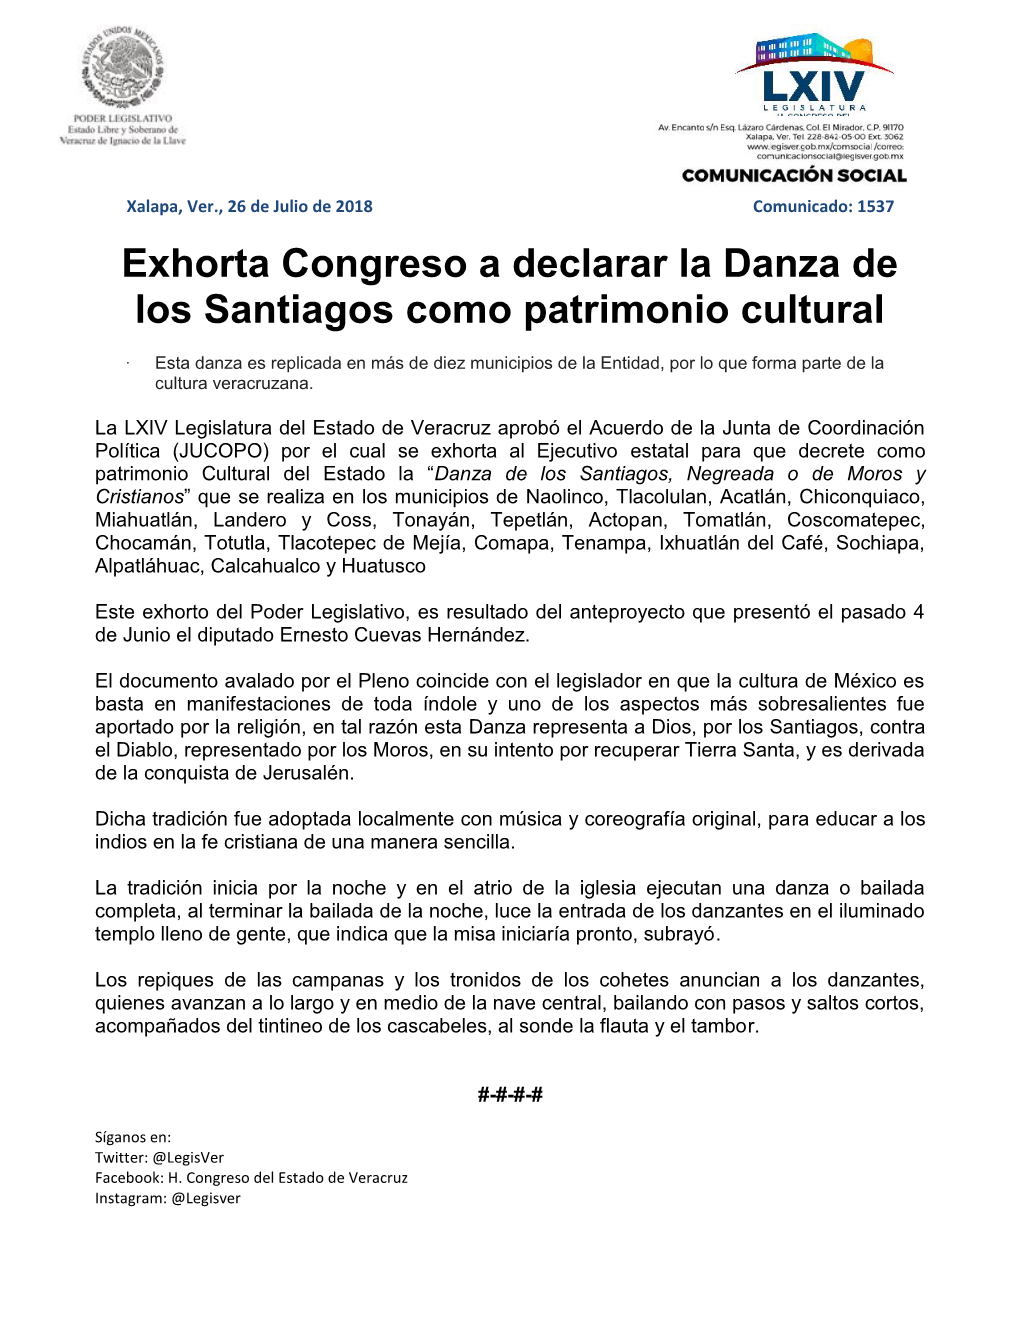 Exhorta Congreso a Declarar La Danza De Los Santiagos Como Patrimonio Cultural